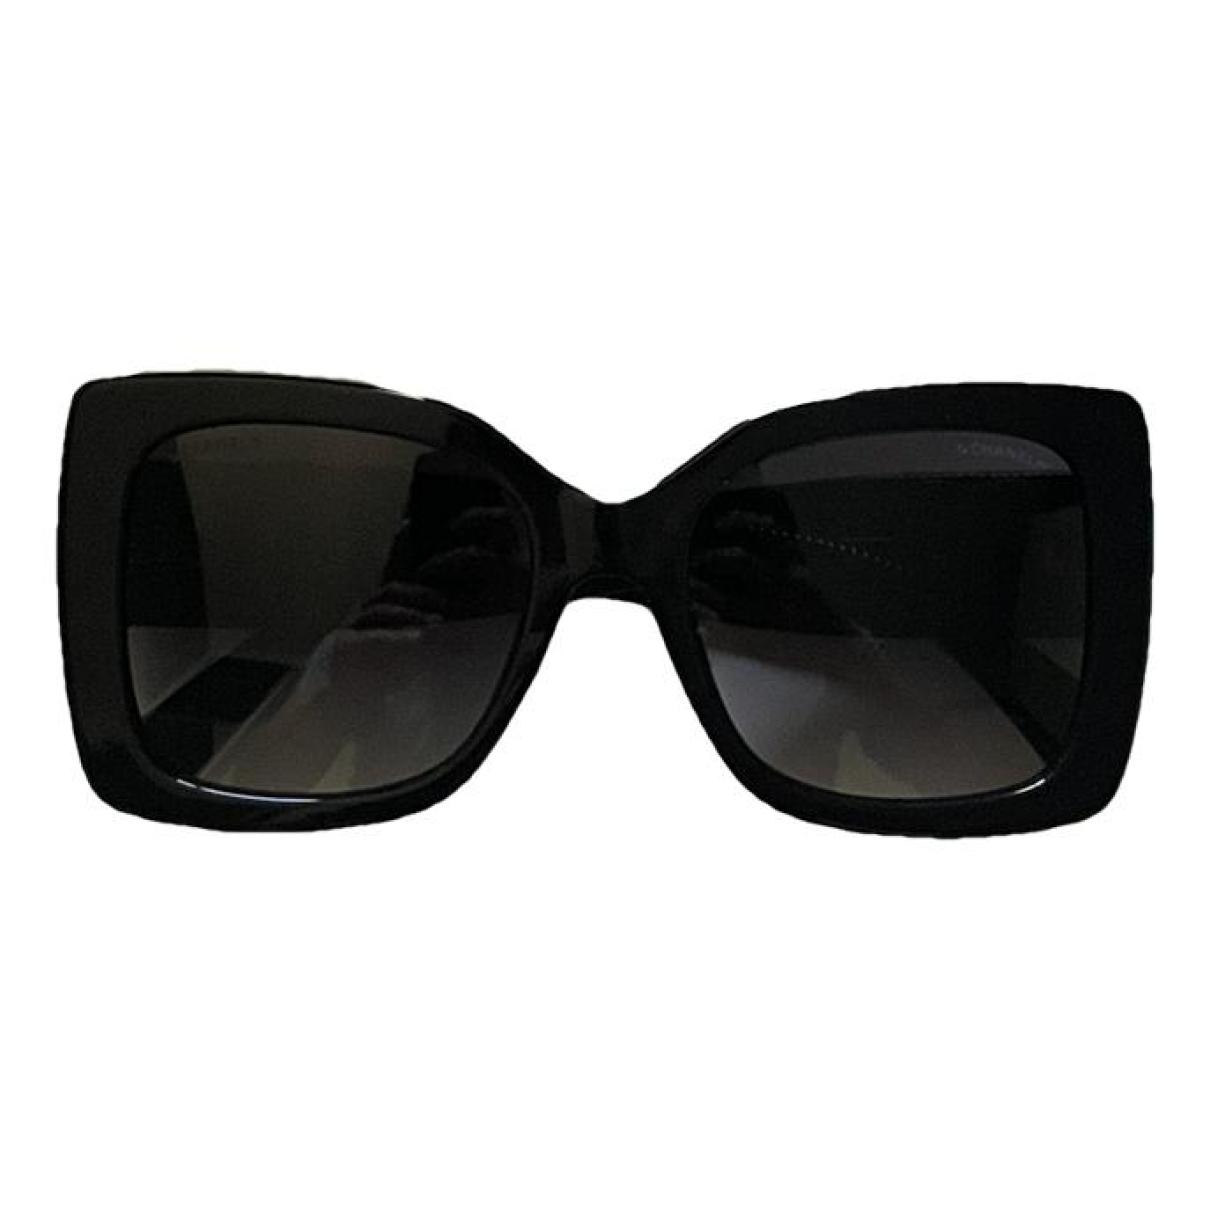 Sunglasses Chanel Black in Plastic - 36381753